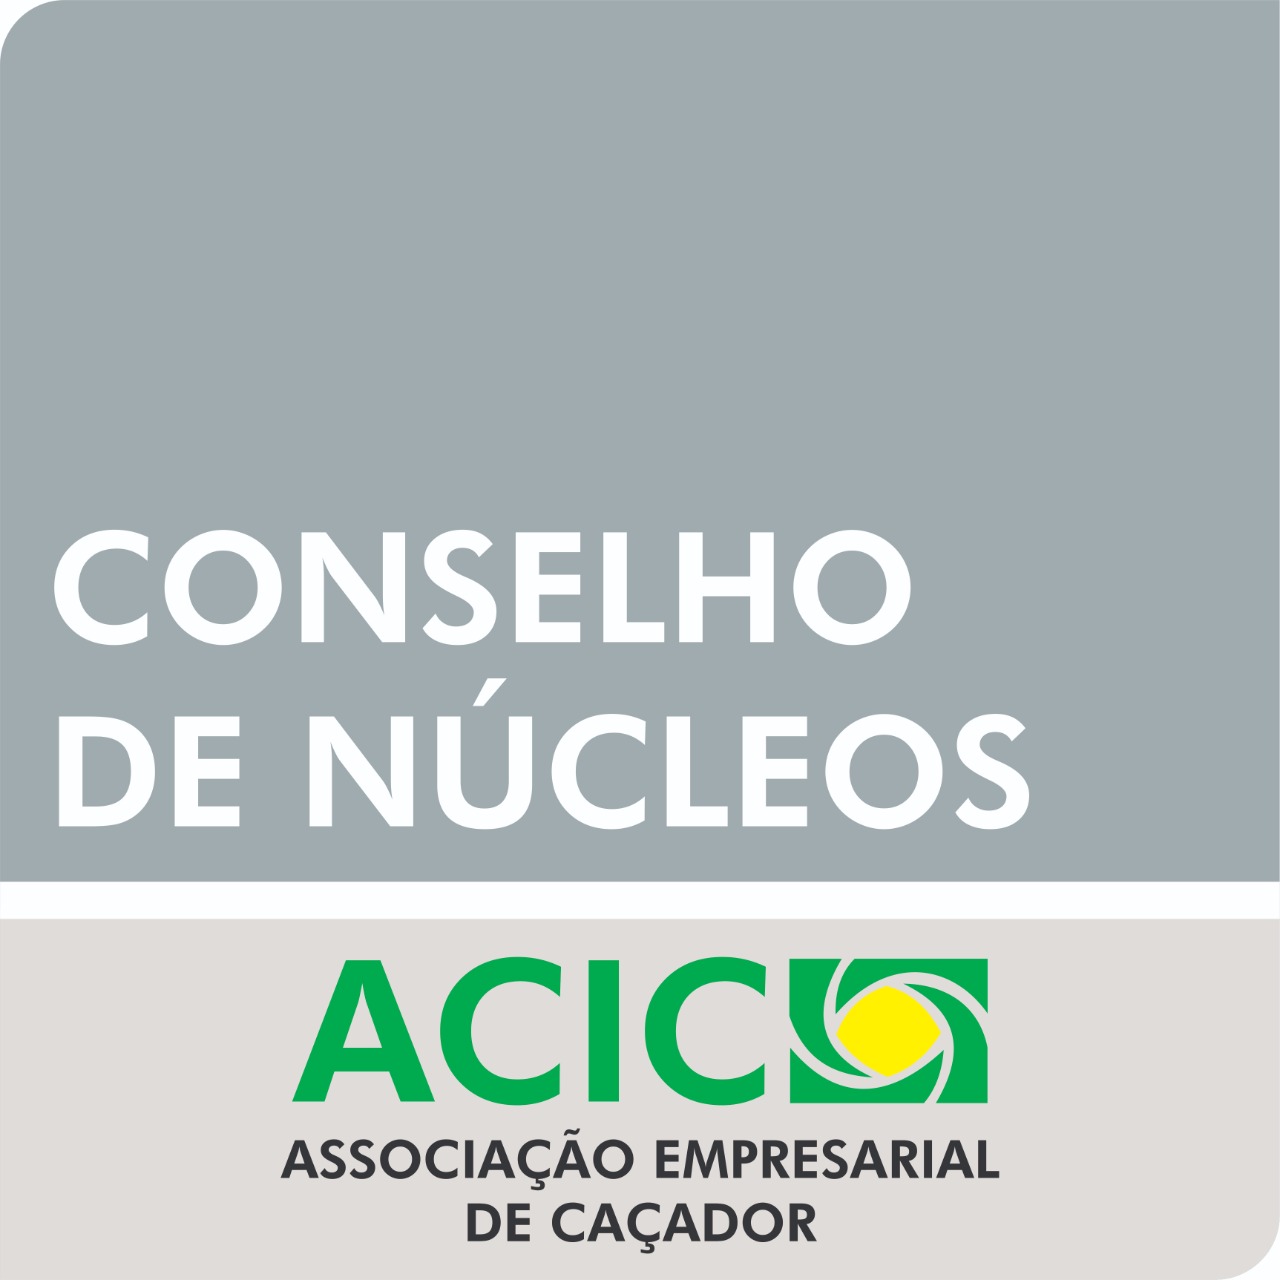 Conselho de núcleos ACIC